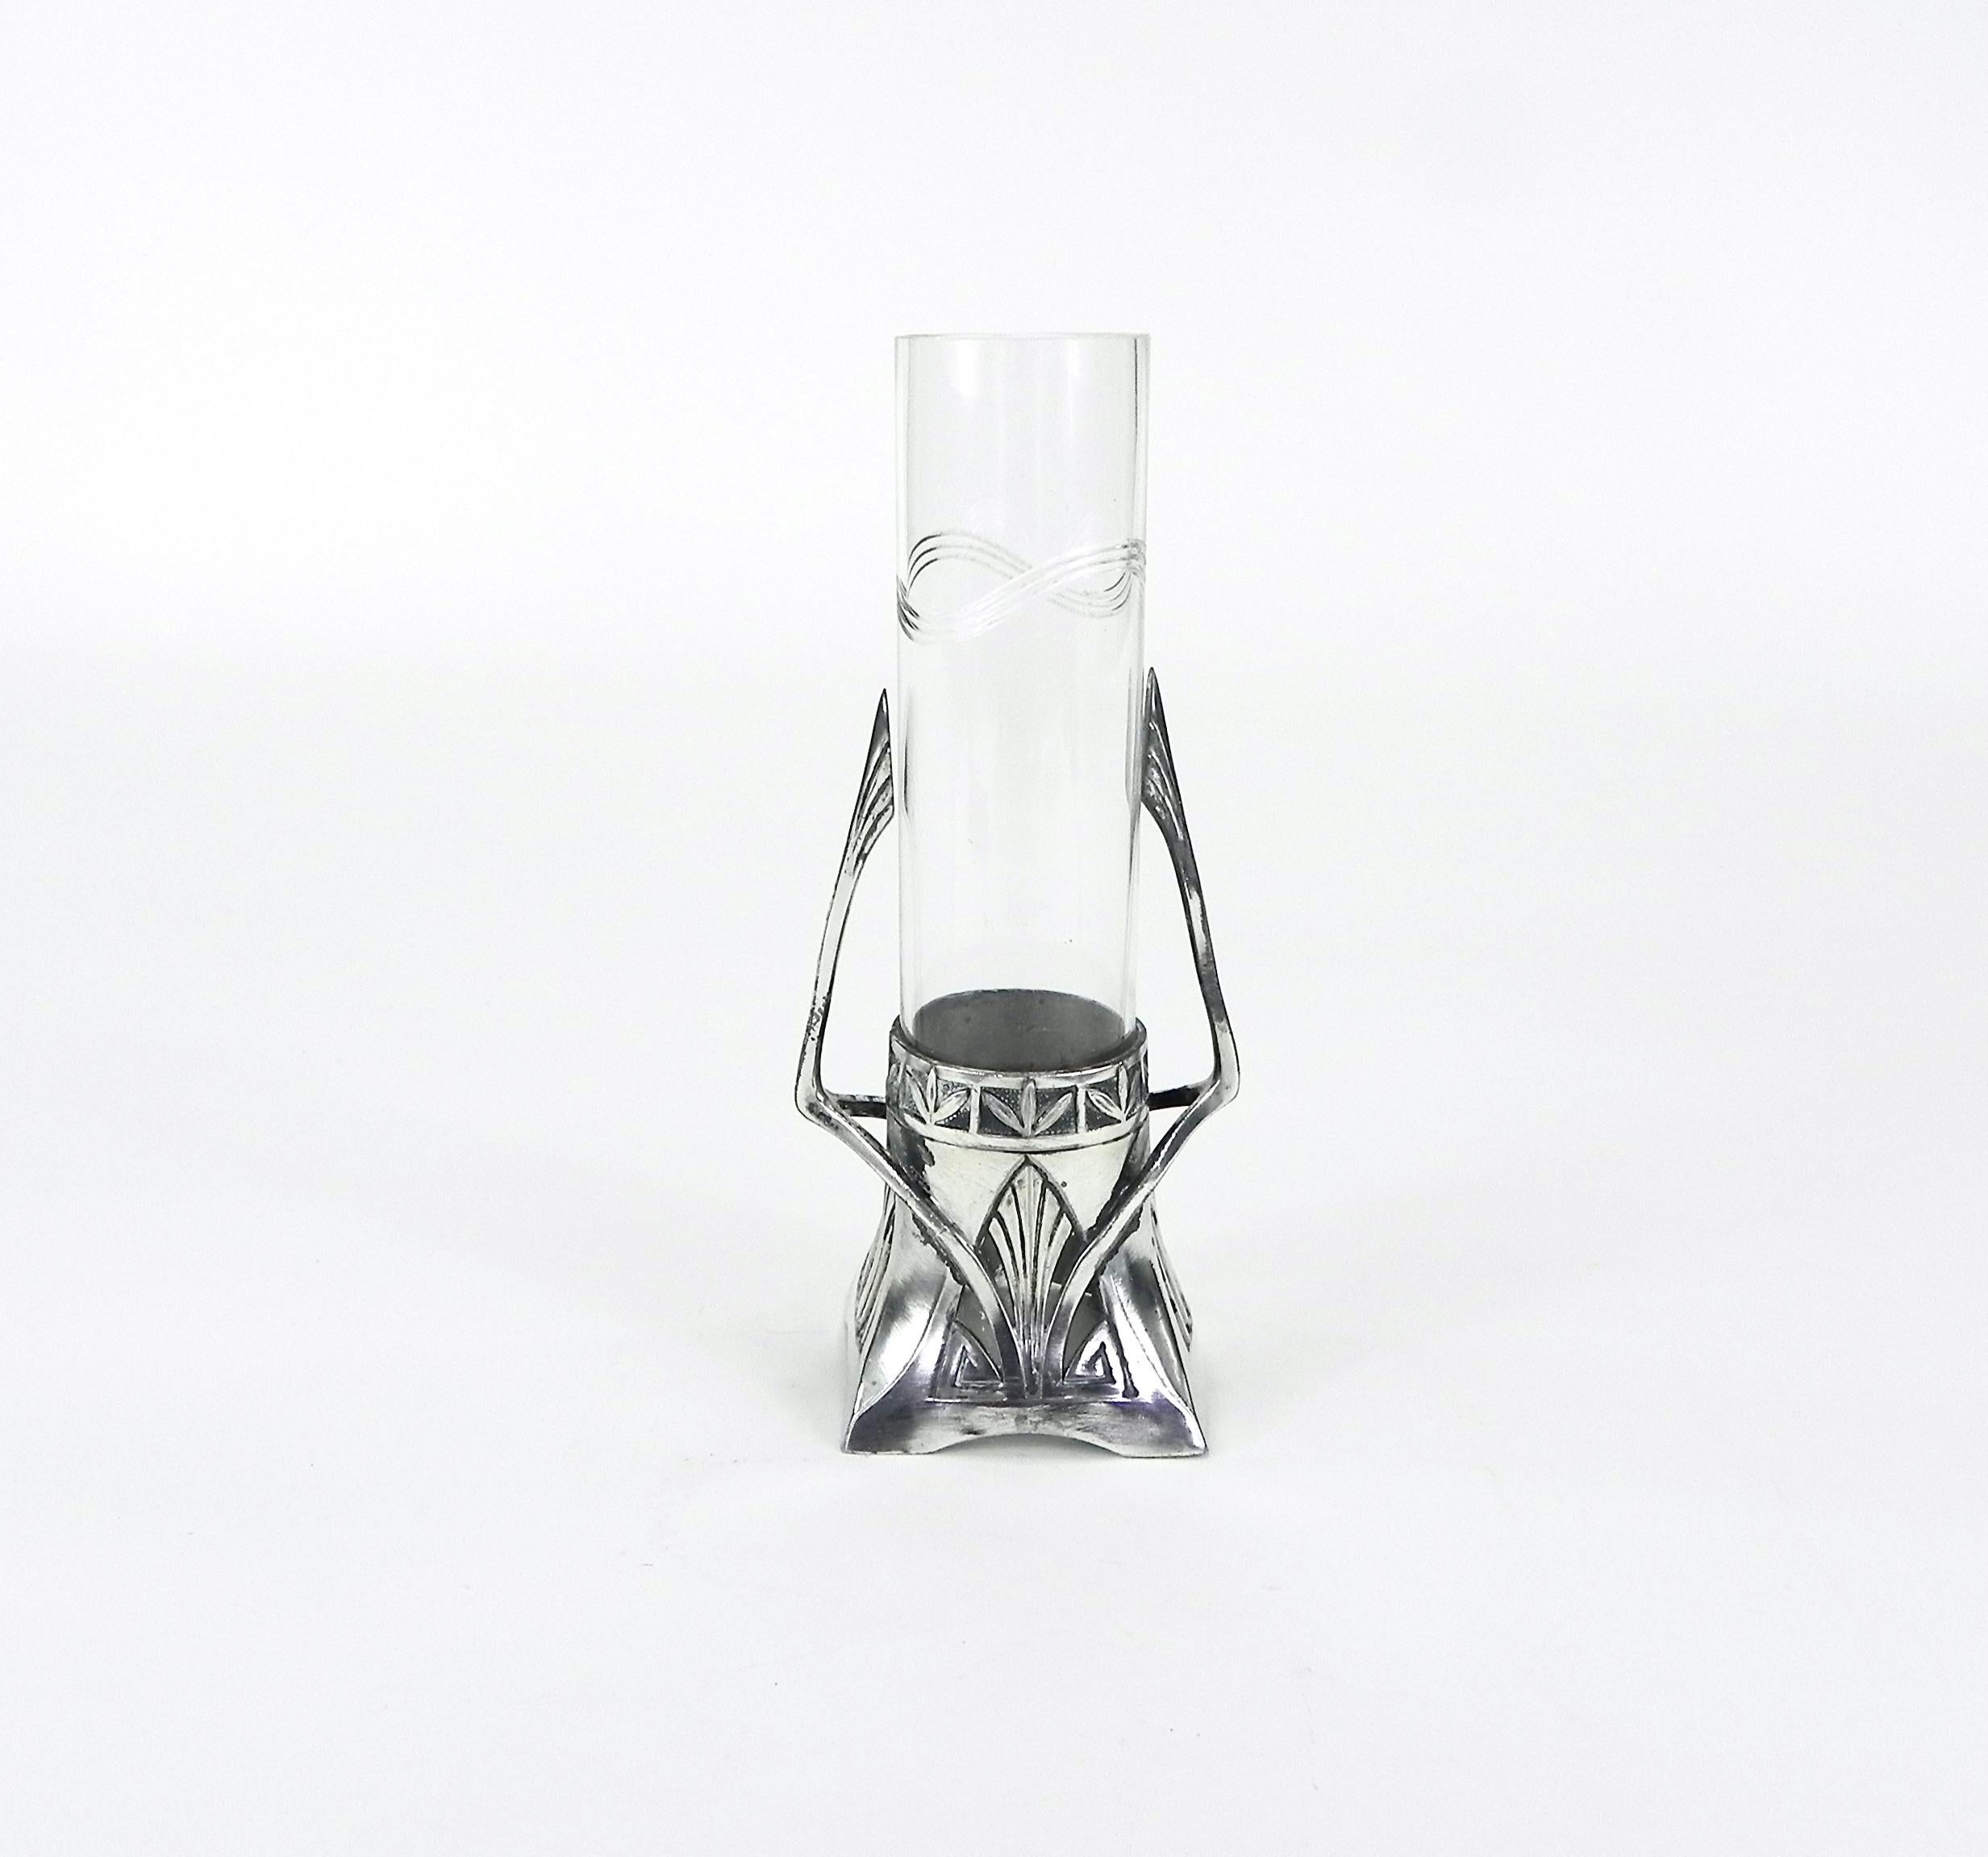 Ce vase antique en étain et verre de Carl Condit (1856-1948), de style Art Nouveau Jugendstil, a été fabriqué vers 1900 et est en excellent état. Pas de bosses, de pièces manquantes ou de réparations sur le support en étain. L'étain semble présenter